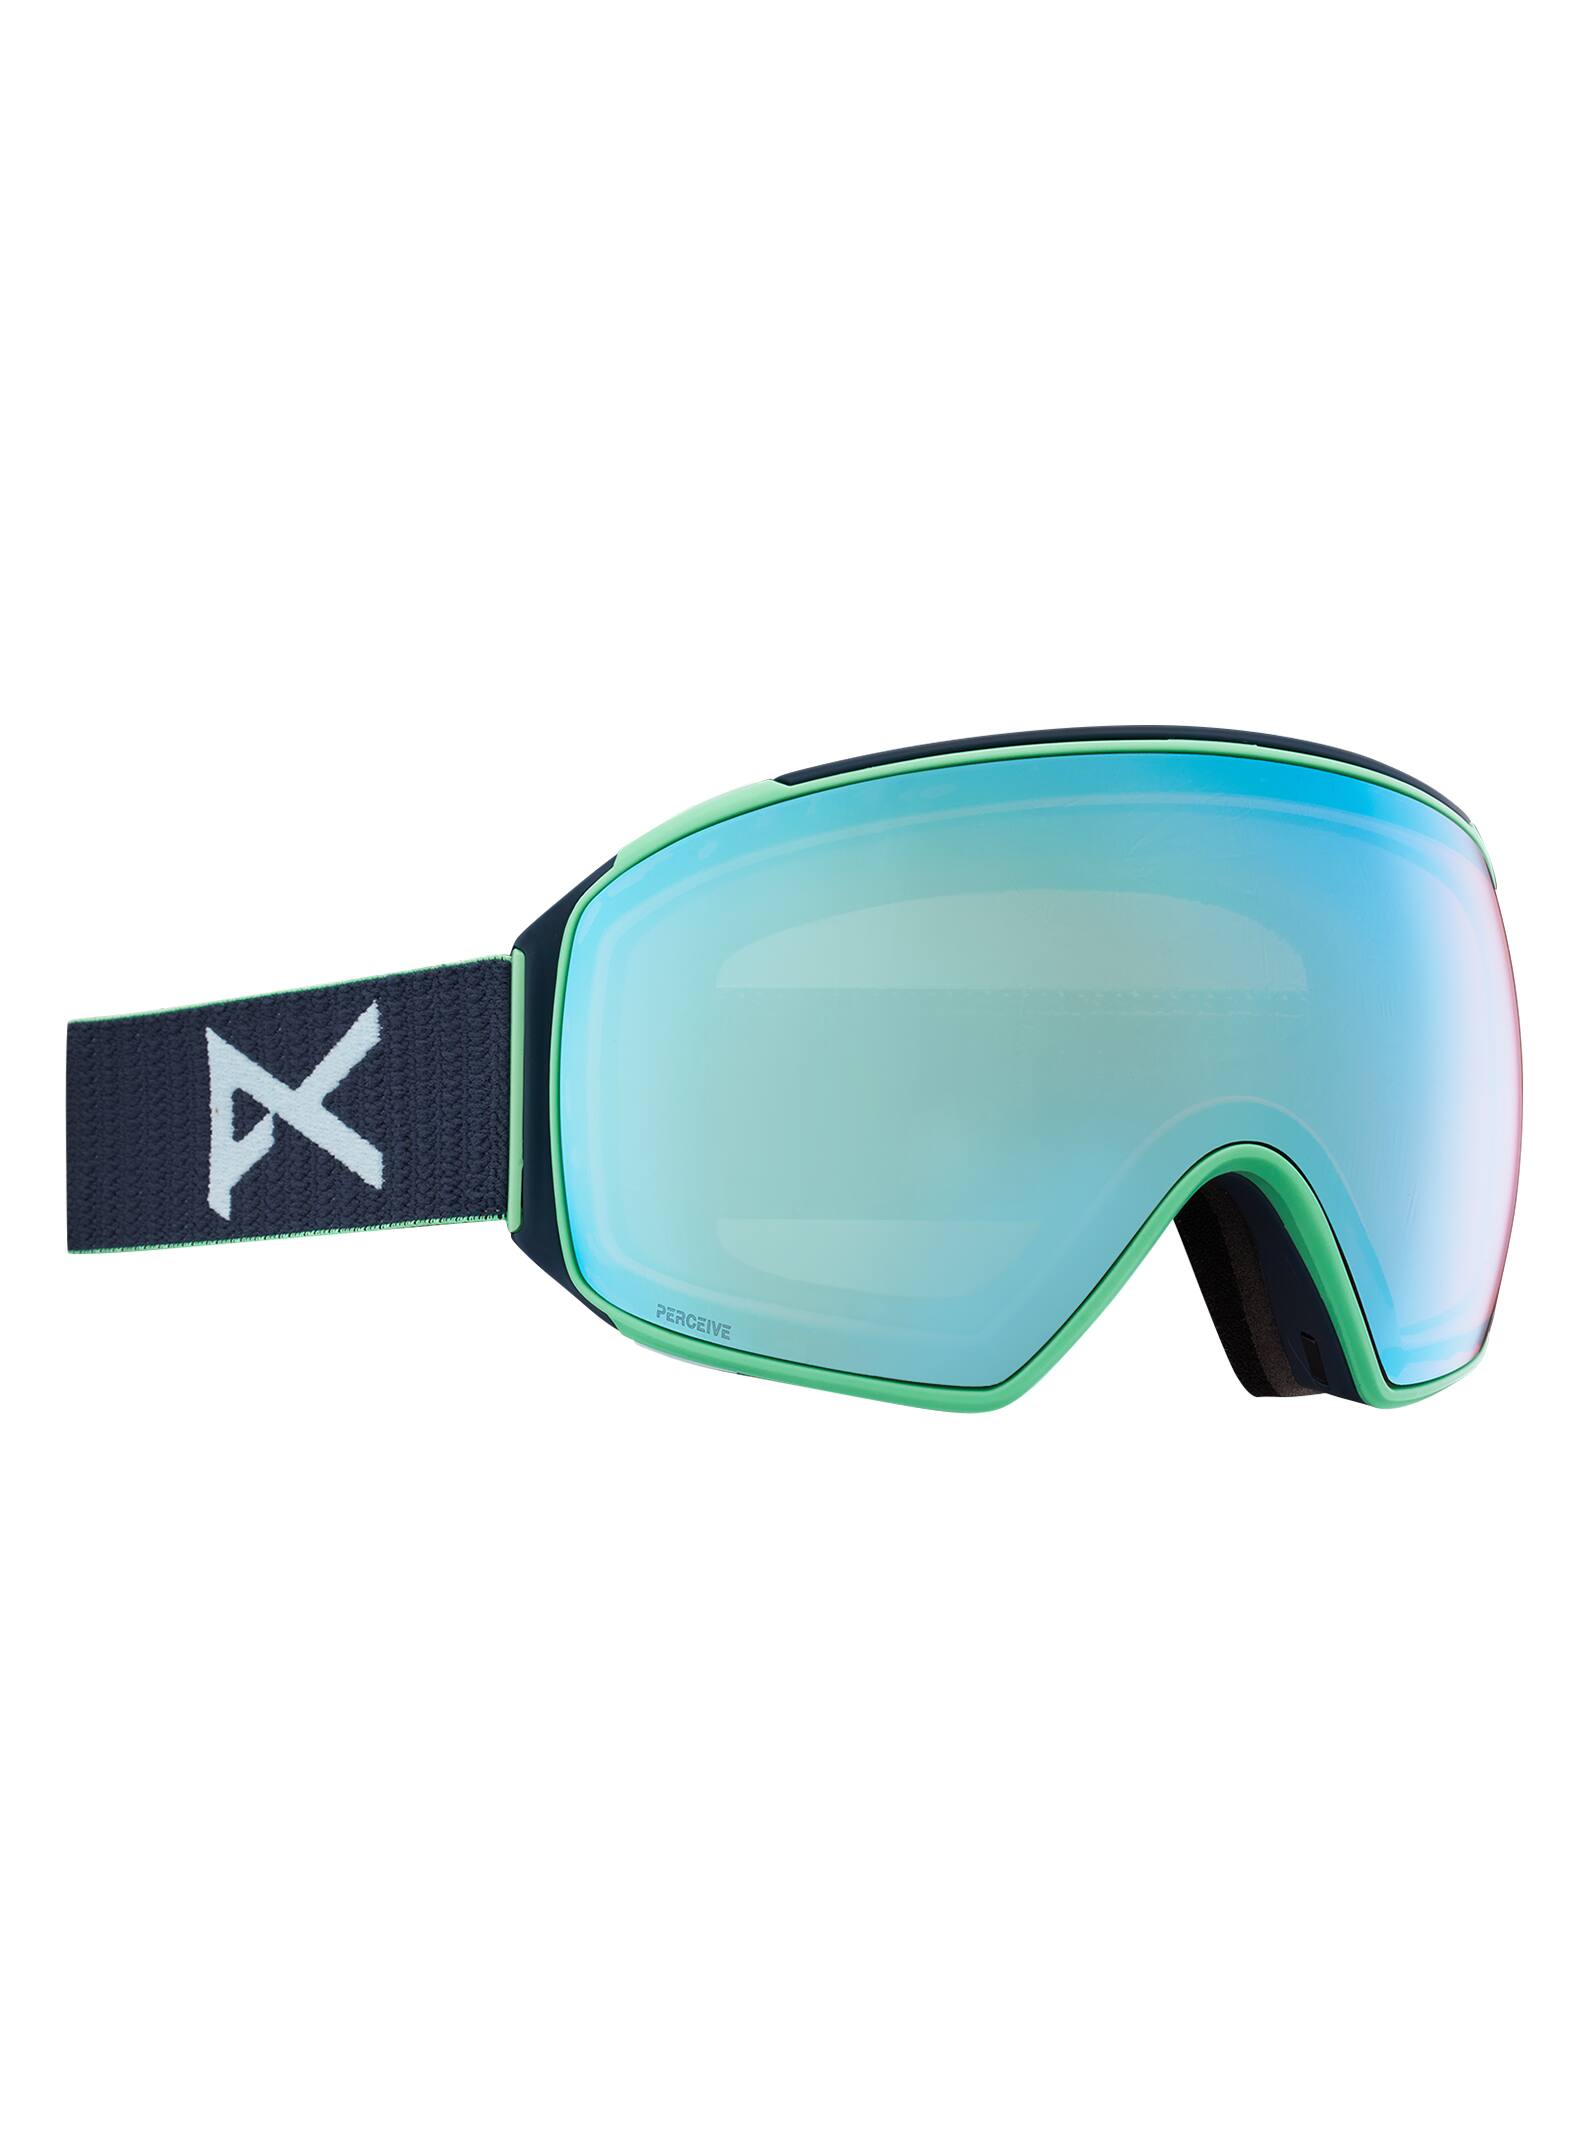 Anon Figment Skibrille Snowboardbrille Goggle Brille Schneebrille 